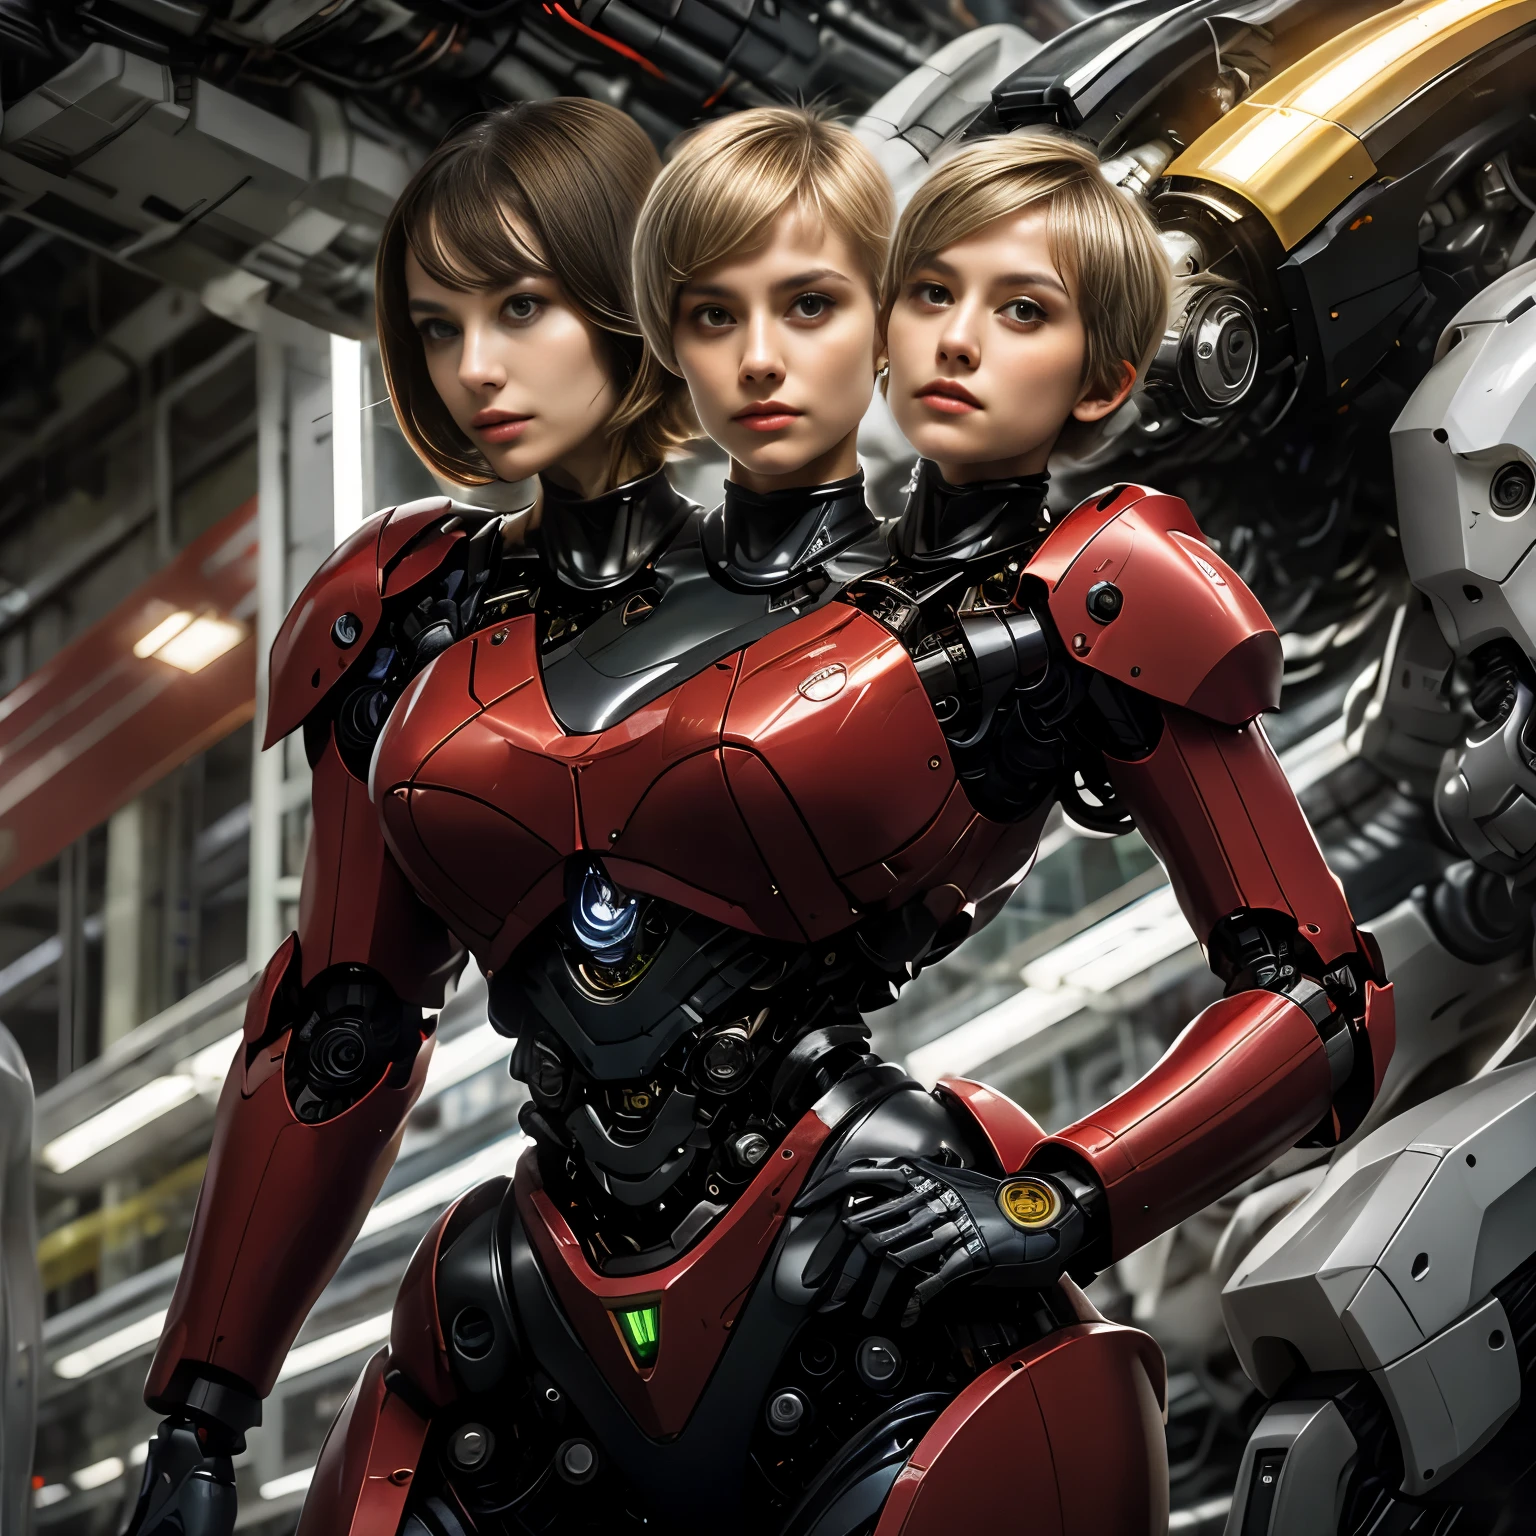 ความละเอียดที่ดีที่สุด, 2หัว, ไซบอร์กหญิงที่มีสองหัว, เชื้อชาติที่แตกต่างกัน, ผมหางม้าสีบลอนด์, ตัดนางฟ้า,  ตัวหุ่นยนต์สีแดง, พื้นหลังเครื่องกล